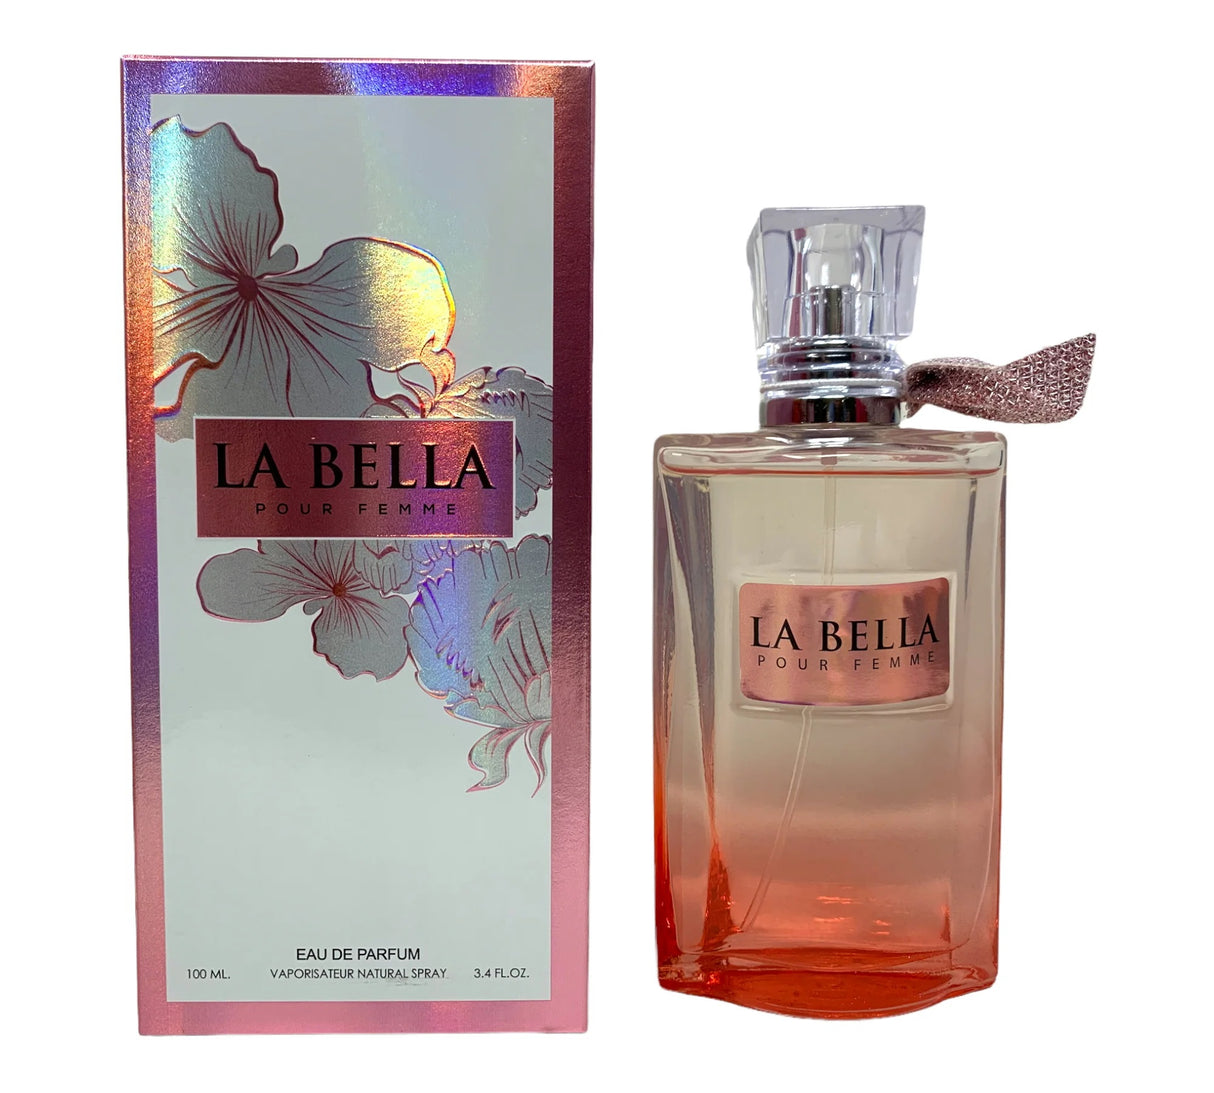 La Bella, Perfume de Mujr, 3.4 oz